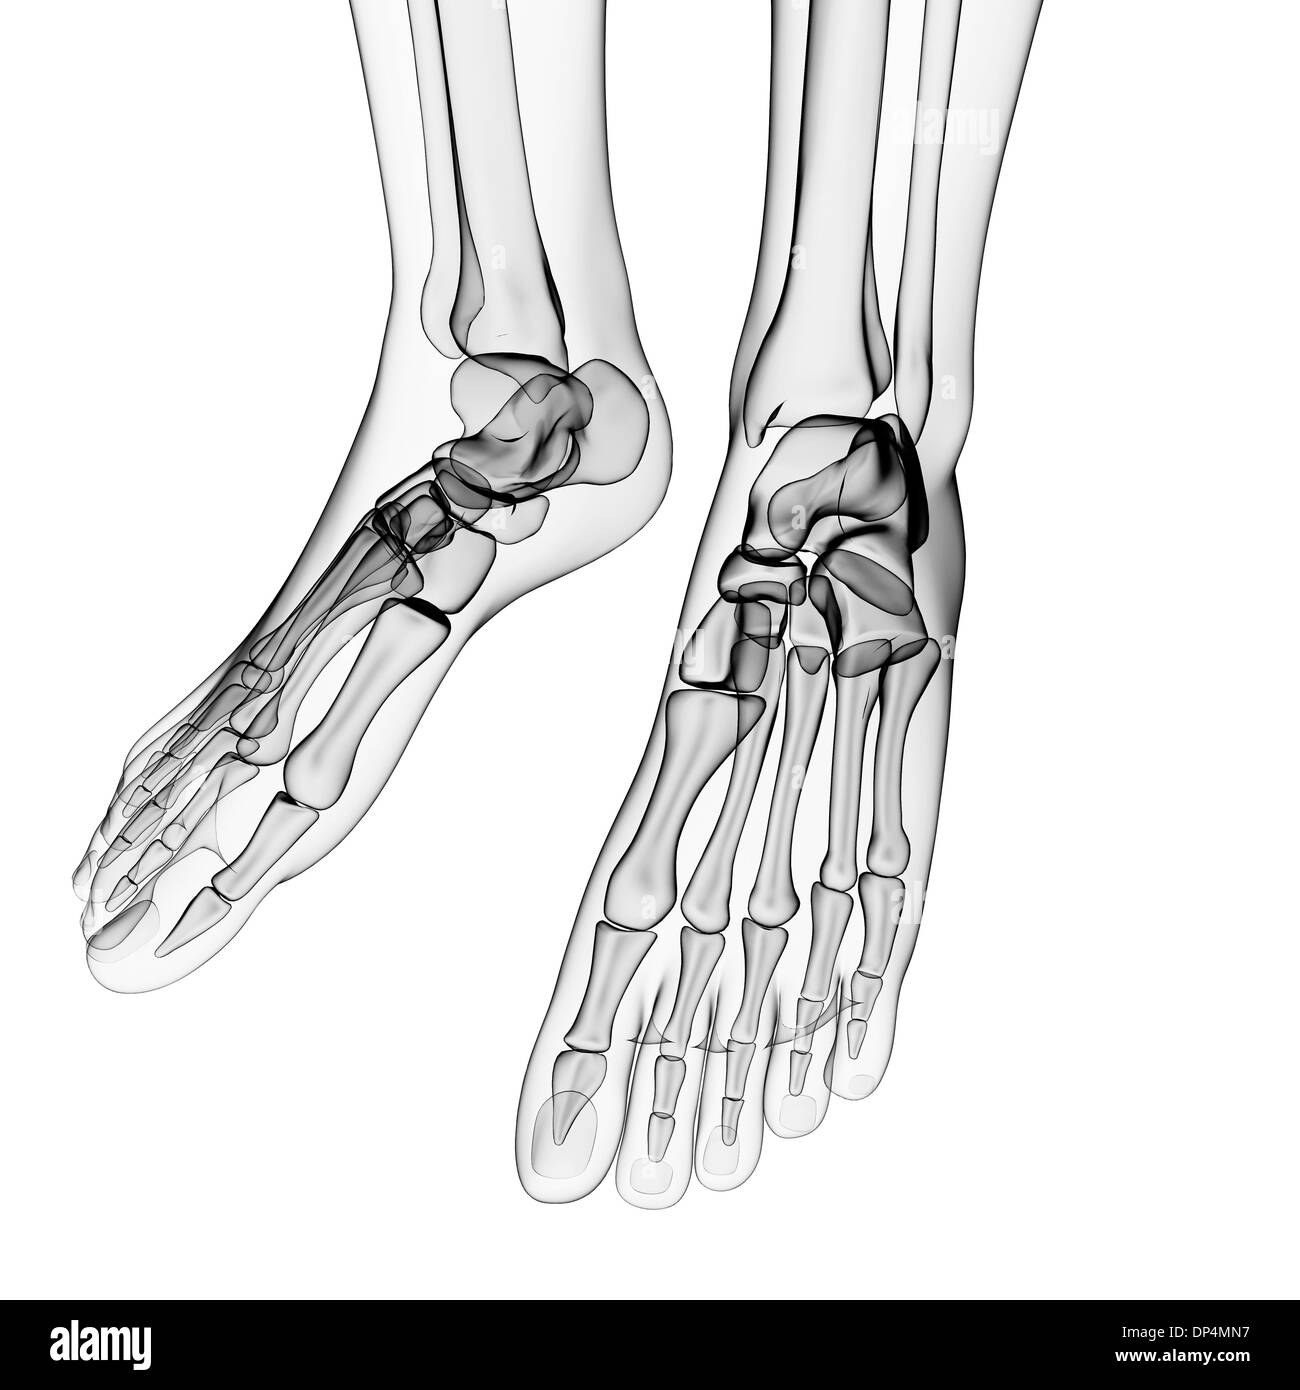 Human foot bones, artwork Stock Photo